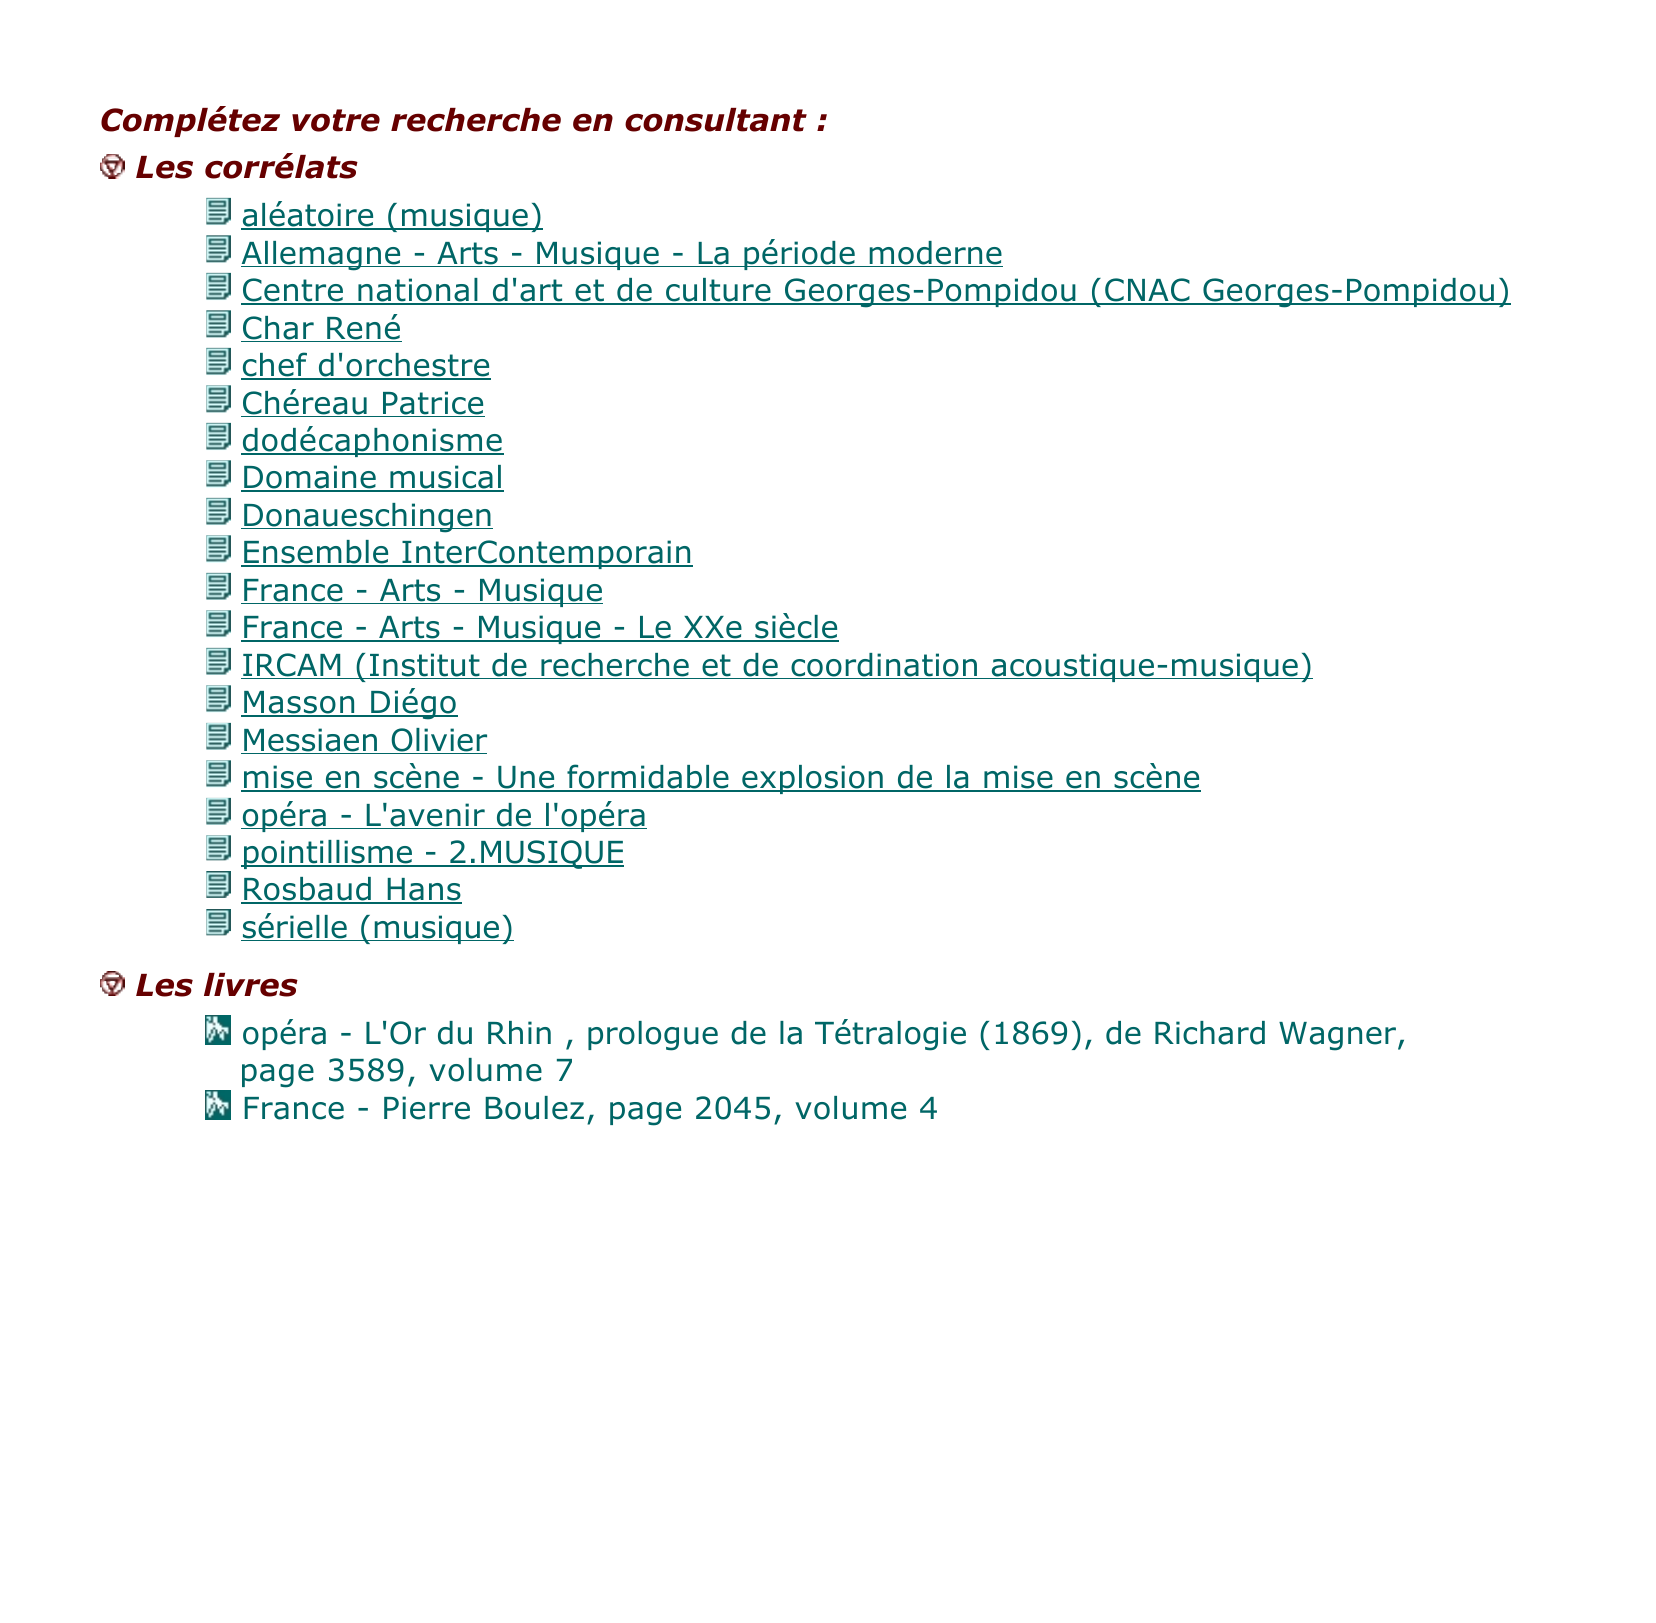 Prévisualisation du document Boulez Pierre, né en 1925 à Montbrison (Loire), compositeur et chef d'orchestre français.